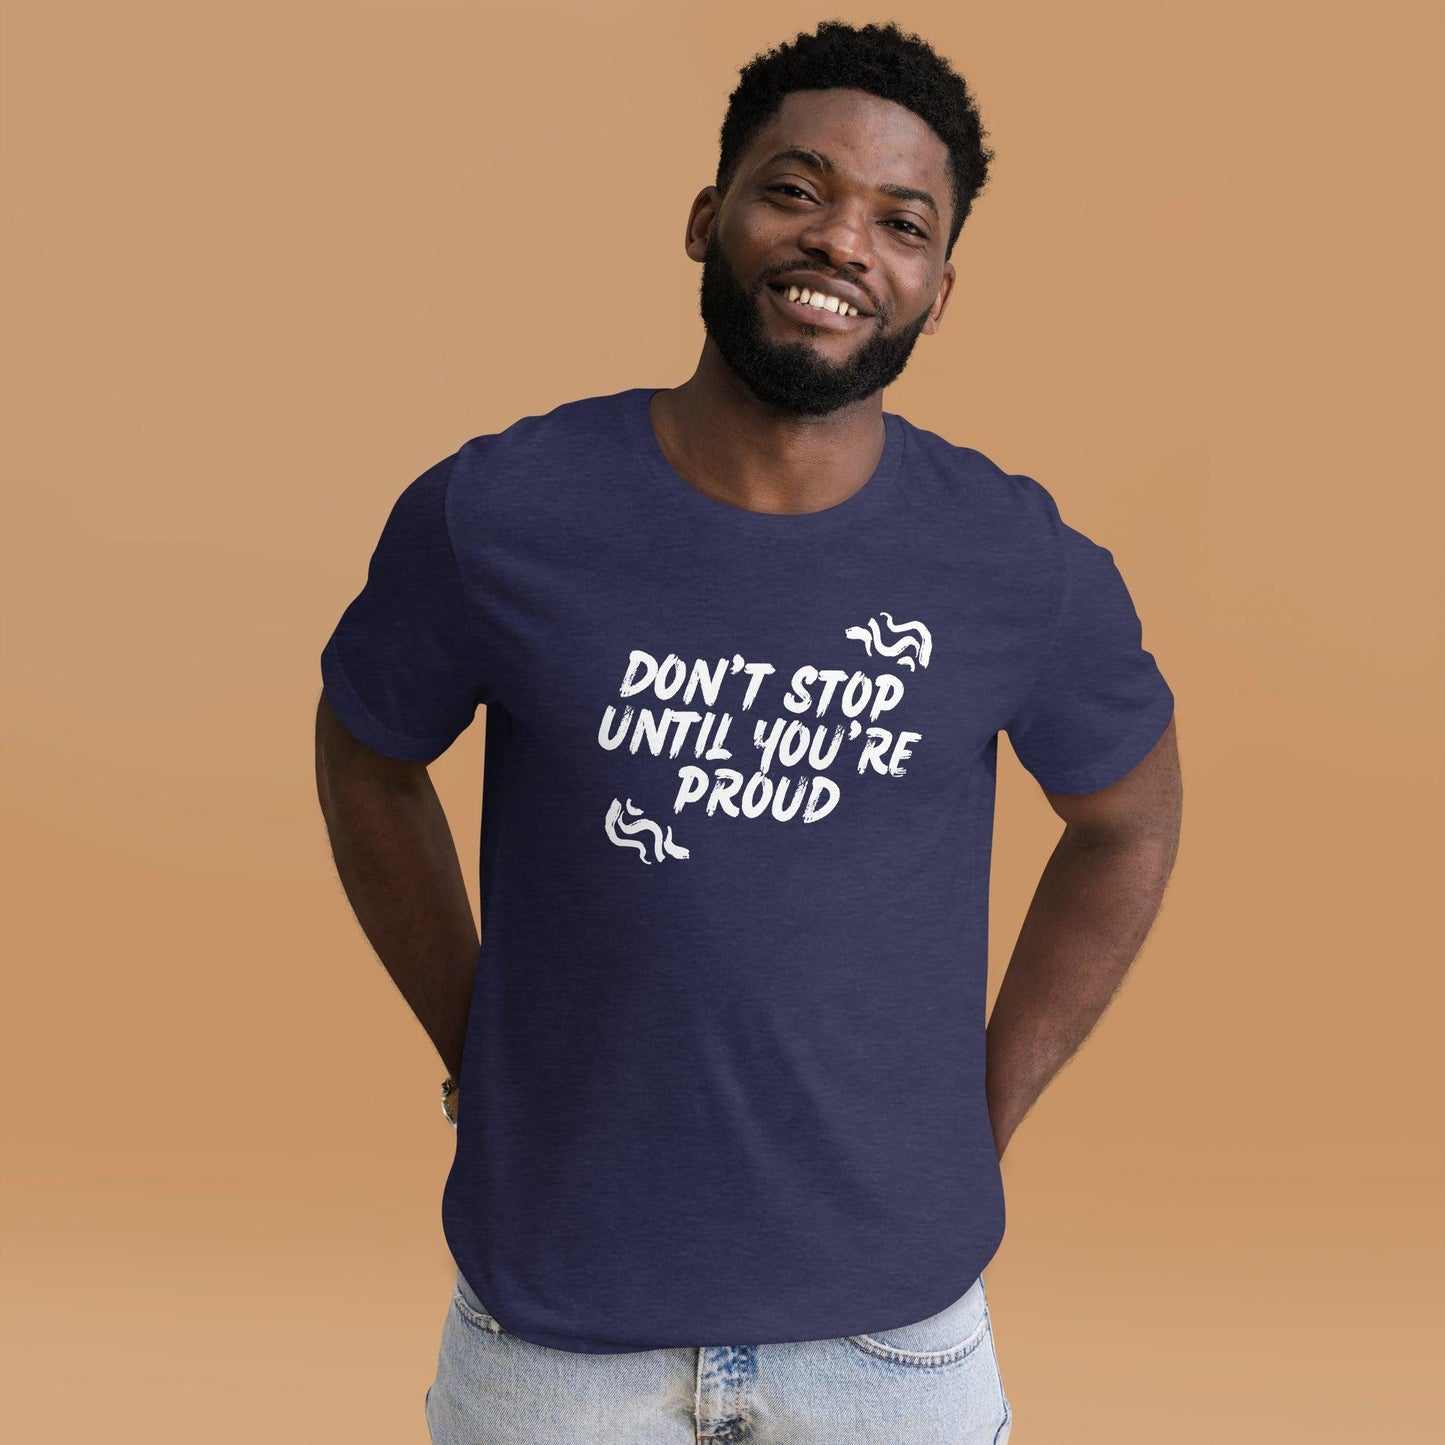 Premium Crew T-Shirt - Don't stop until you're proud